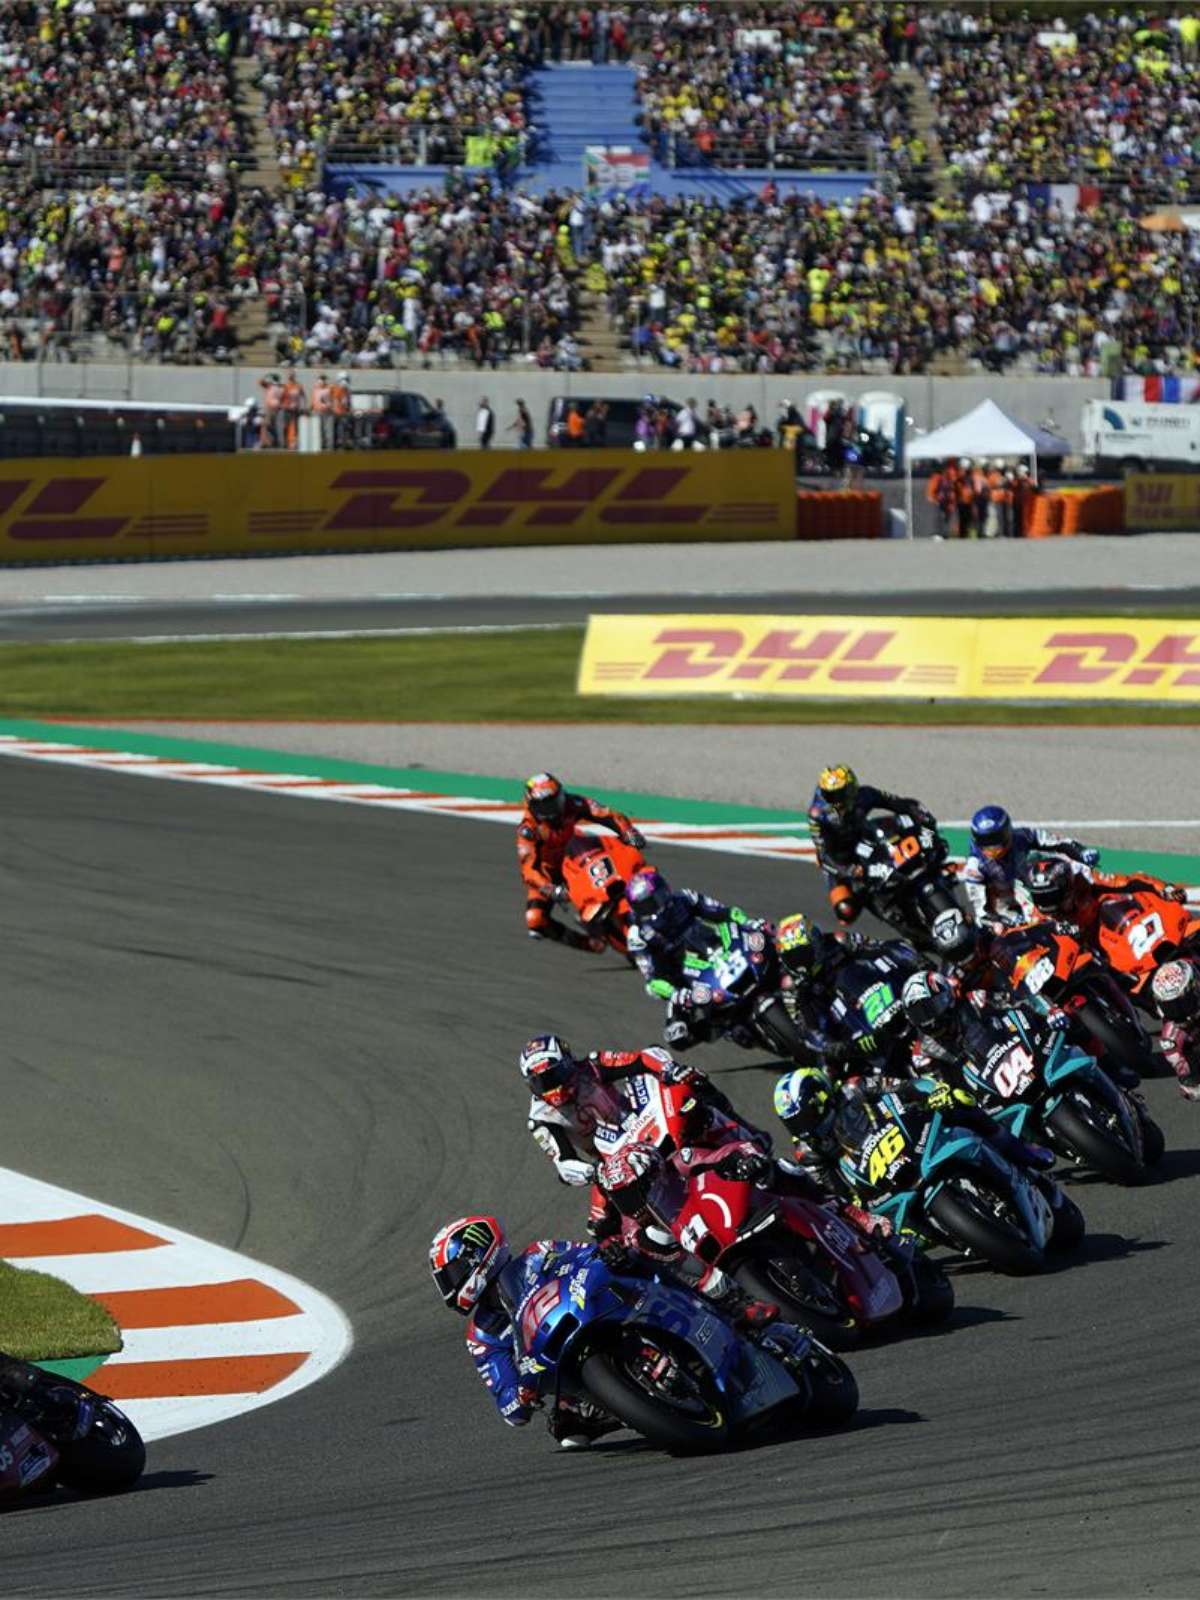 Calendário MotoGP 2022 terá 21 corridas - nenhuma no Brasil - Motonline